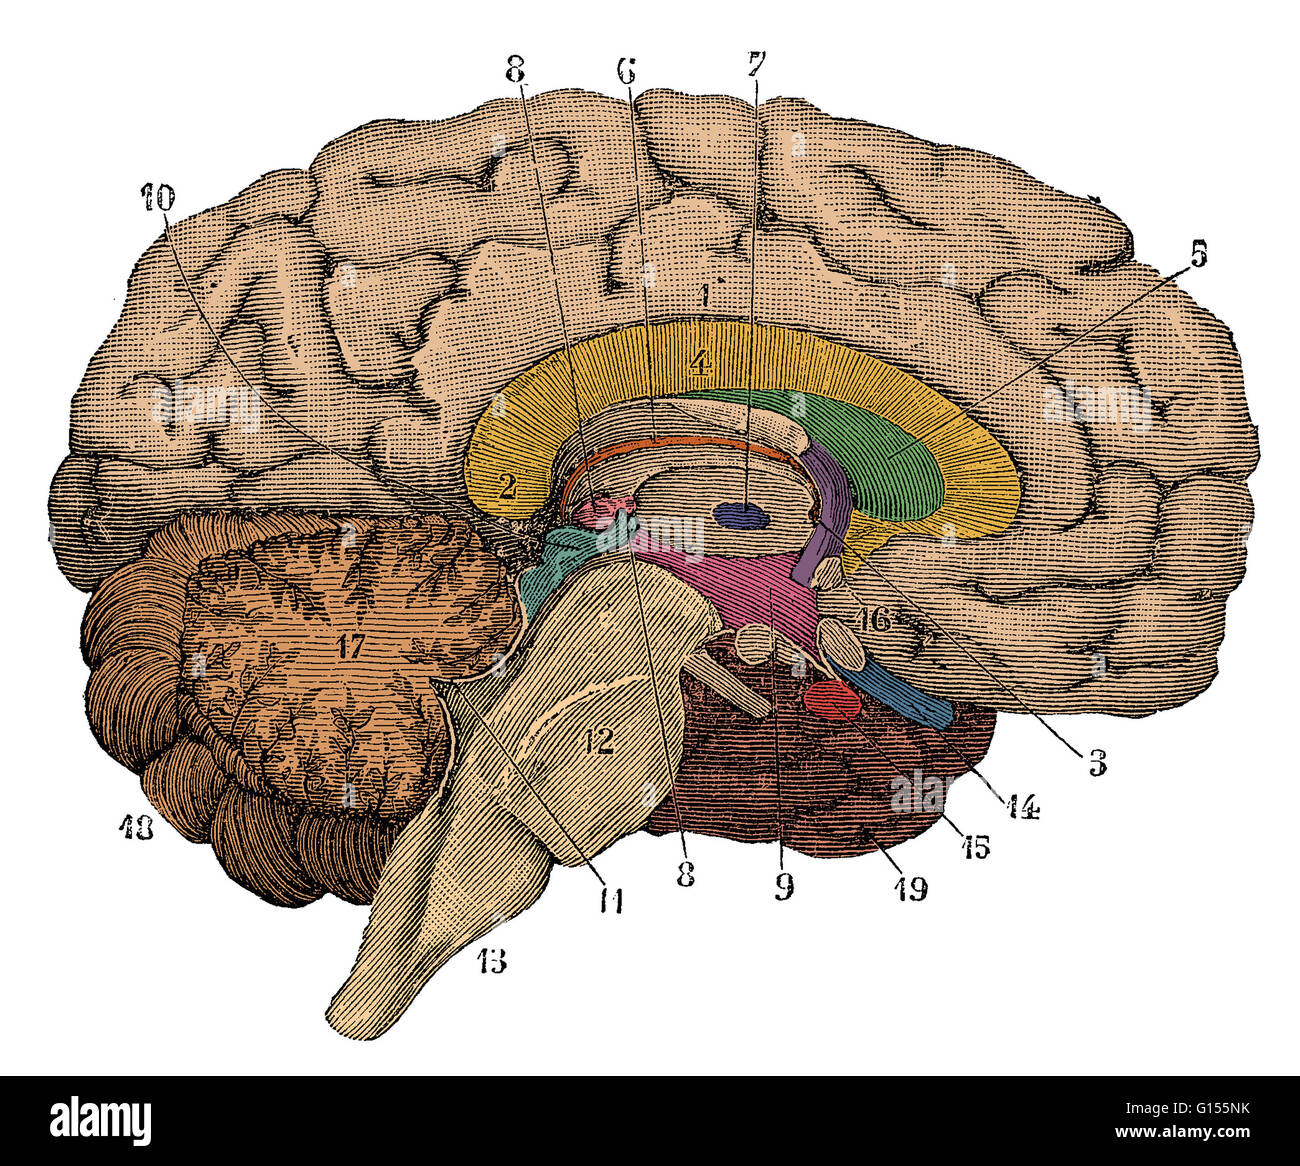 Colore esaltato illustrazione di una sezione trasversale del cervello che mostra parti come il cervello, cervelletto, corpo calloso, micollo allungato, lobo temporale, l'ipotalamo, lobo frontale, sistema limbico, corpo calloso, lobo parietale, talamo, l occipitale Foto Stock